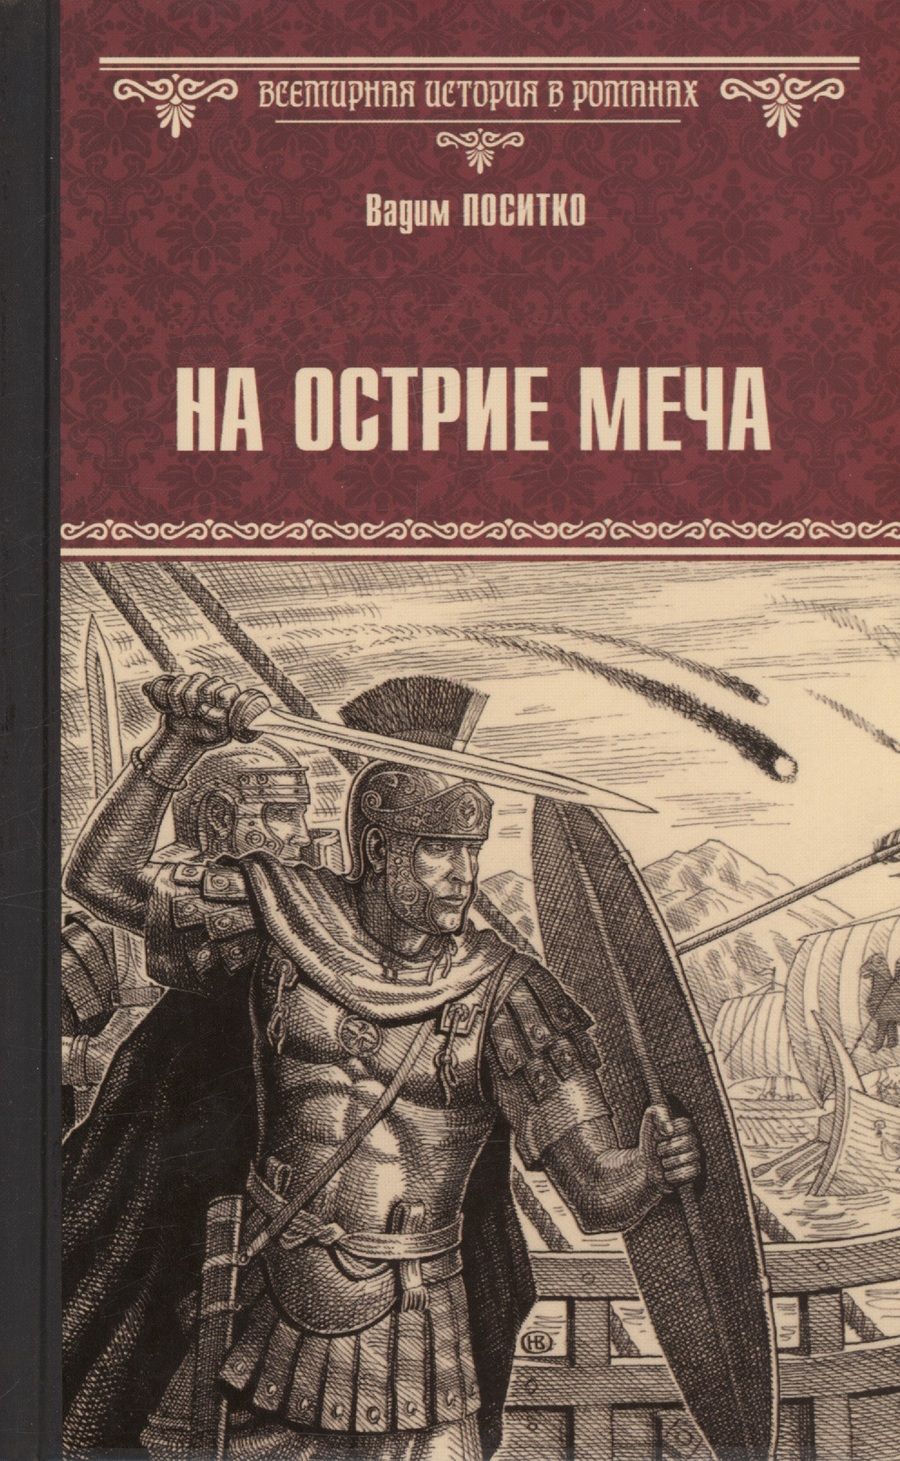 Обложка книги "Поситко: На острие меча"